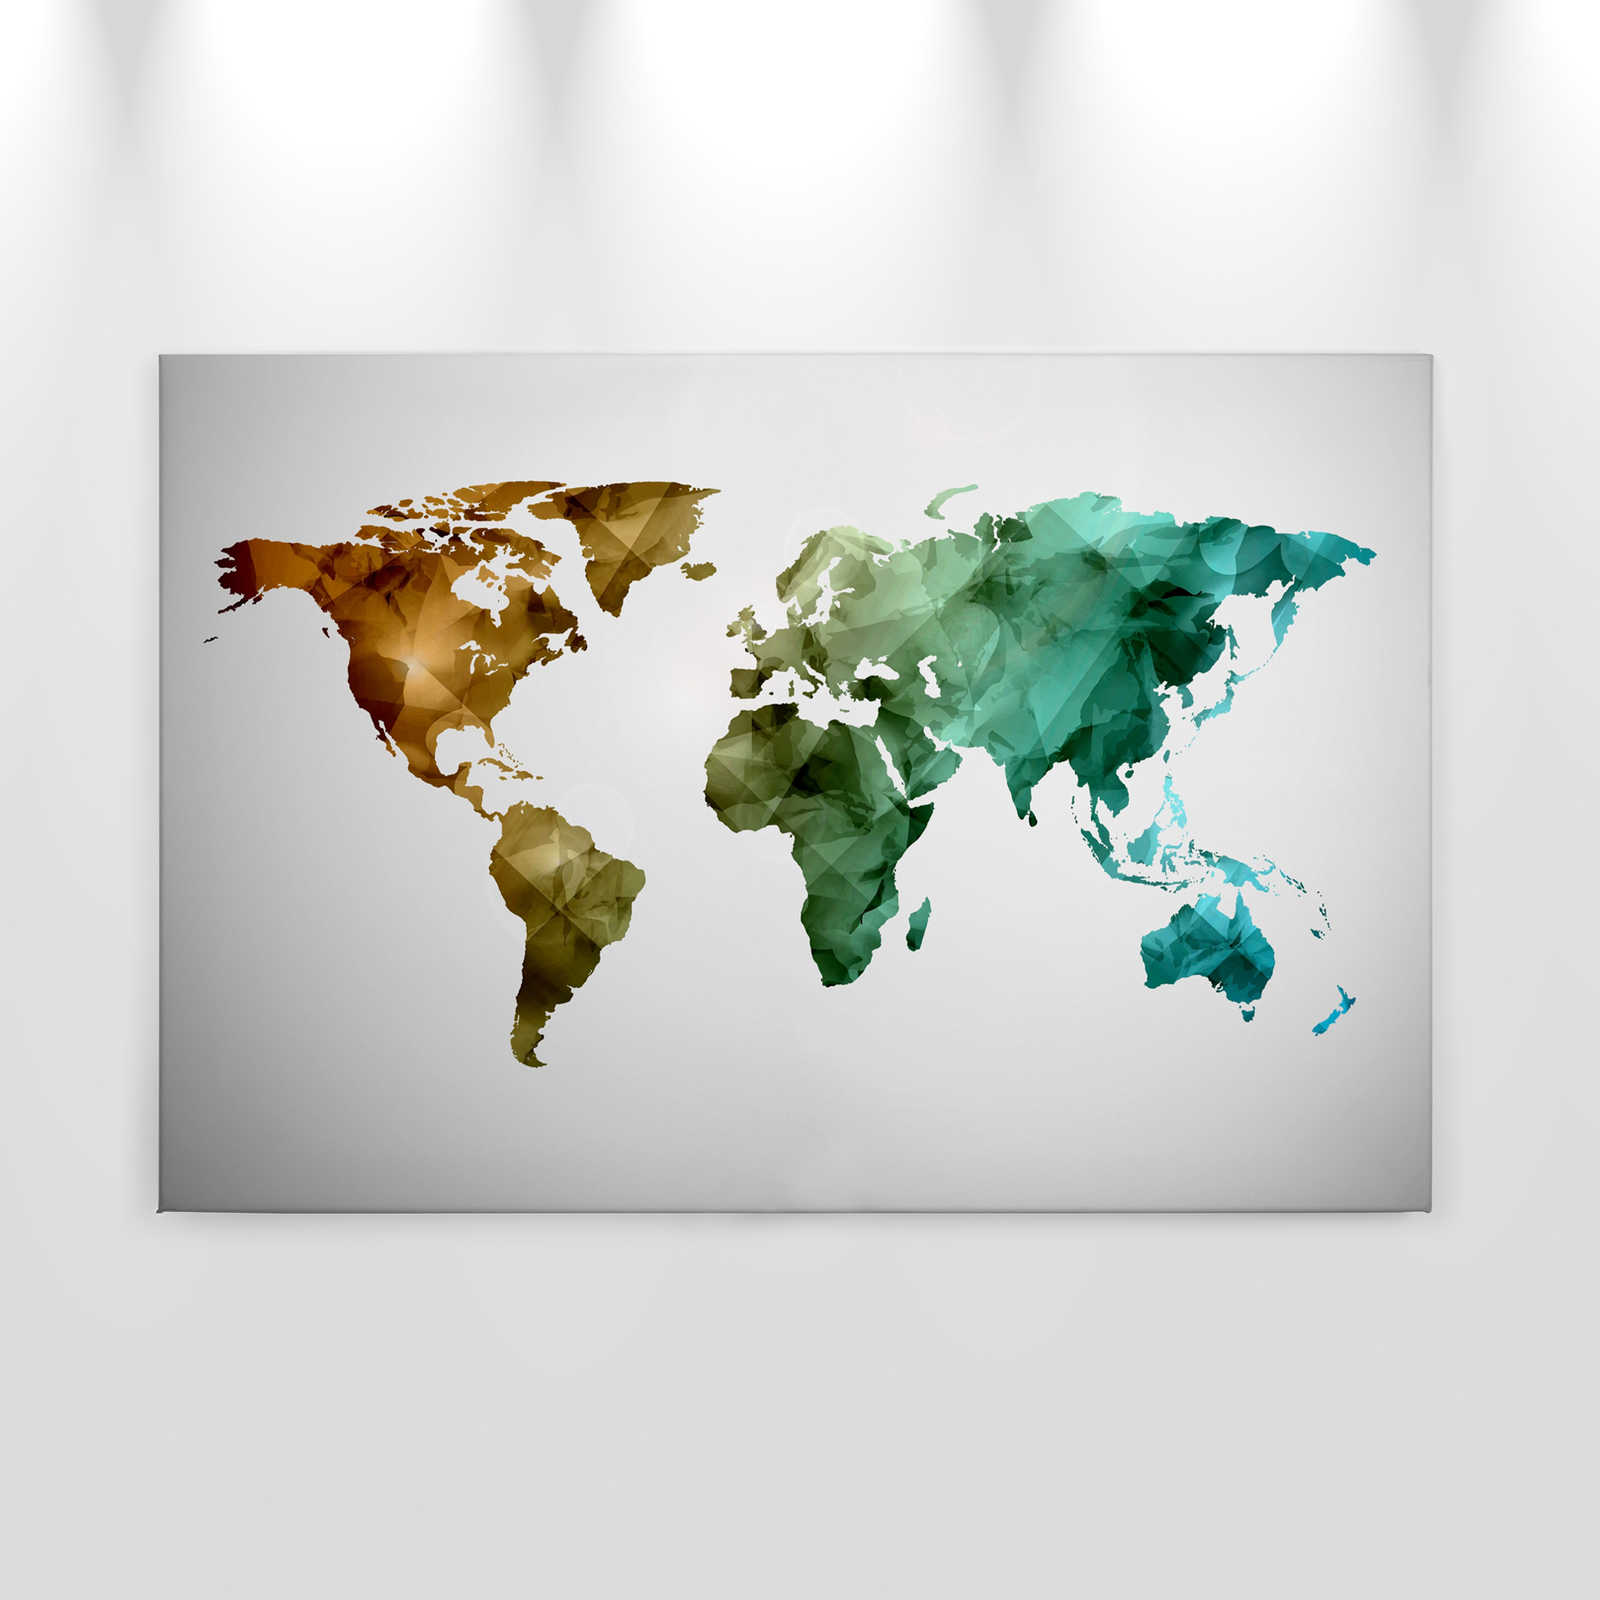             Canvas met wereldkaart gemaakt van grafische elementen | WorldGrafic 1 - 0.90 m x 0.60 m
        